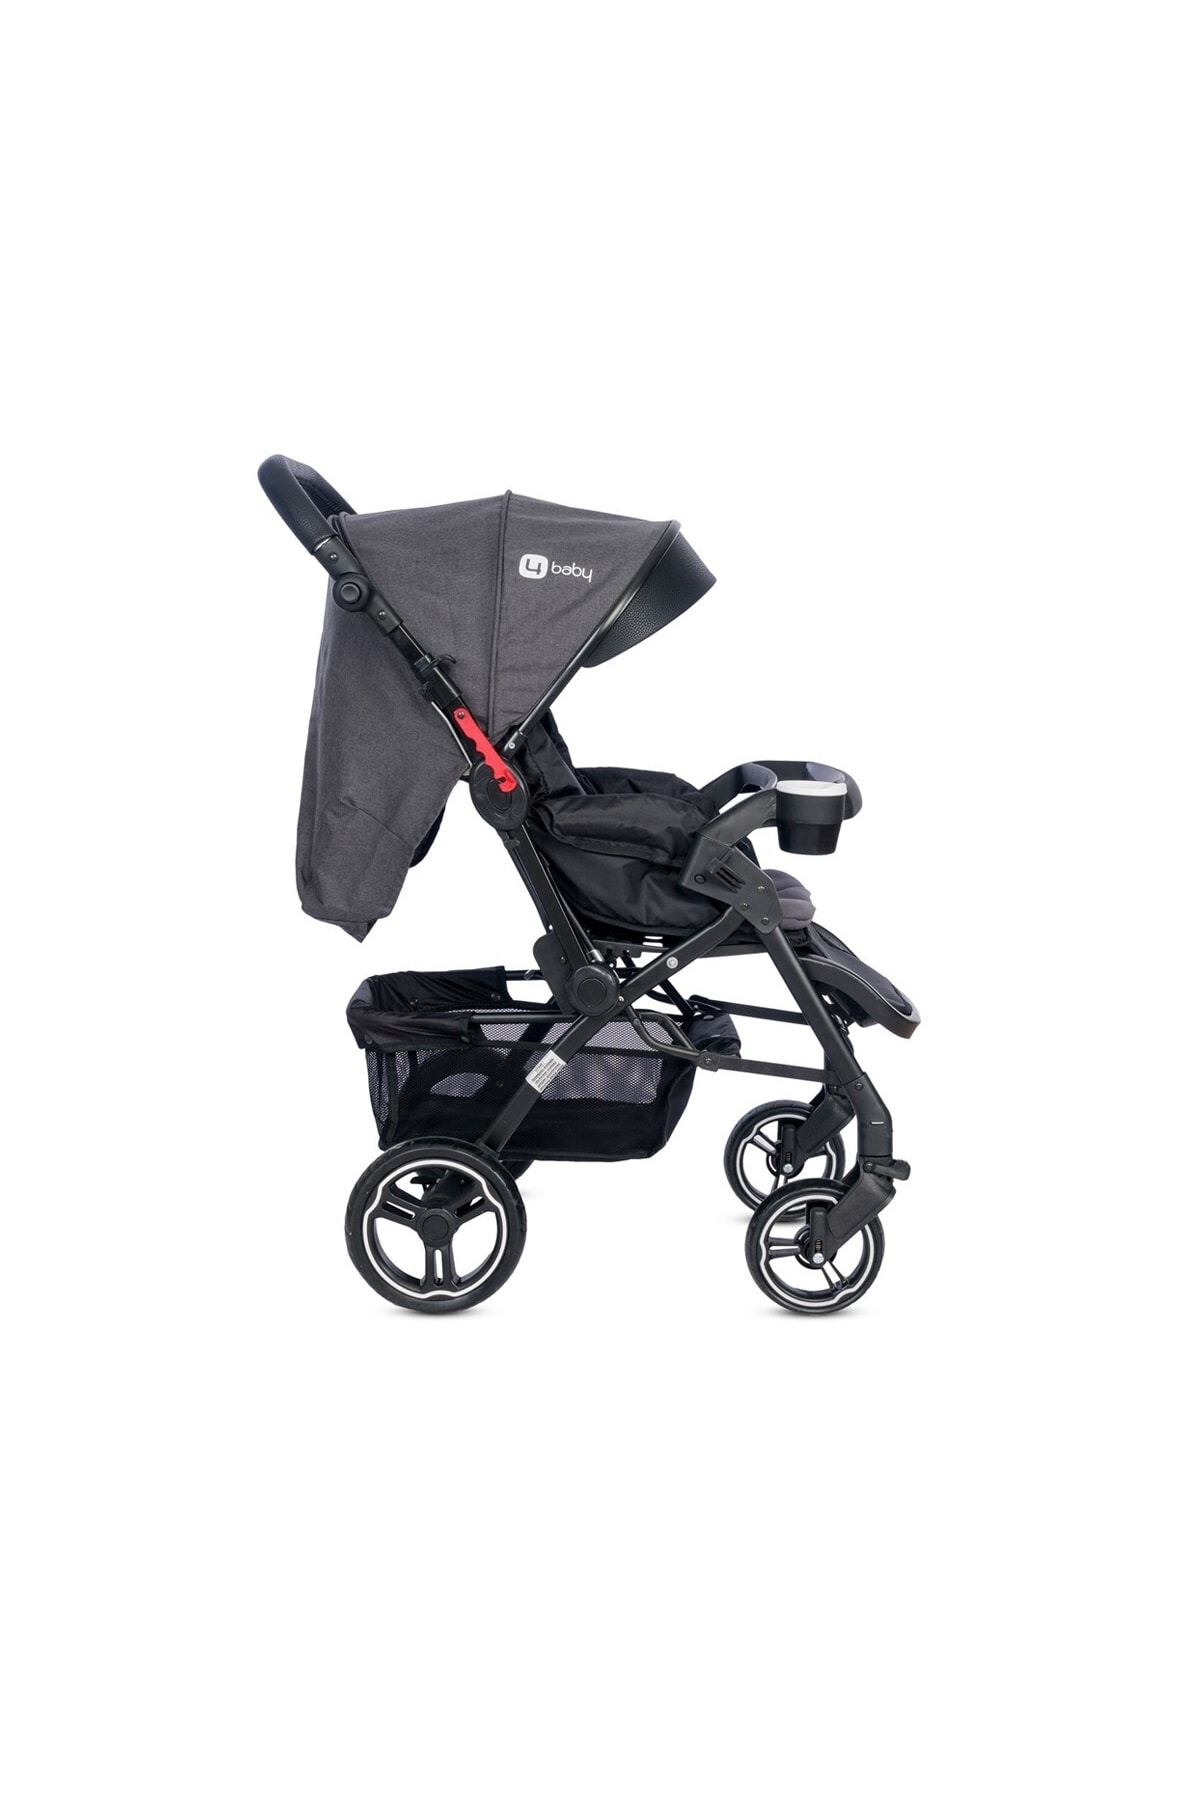 MUTLU BEBE 4 Baby Active Plus Black Çift Yönlü Travel Sistem Bebek Arabası OH10792